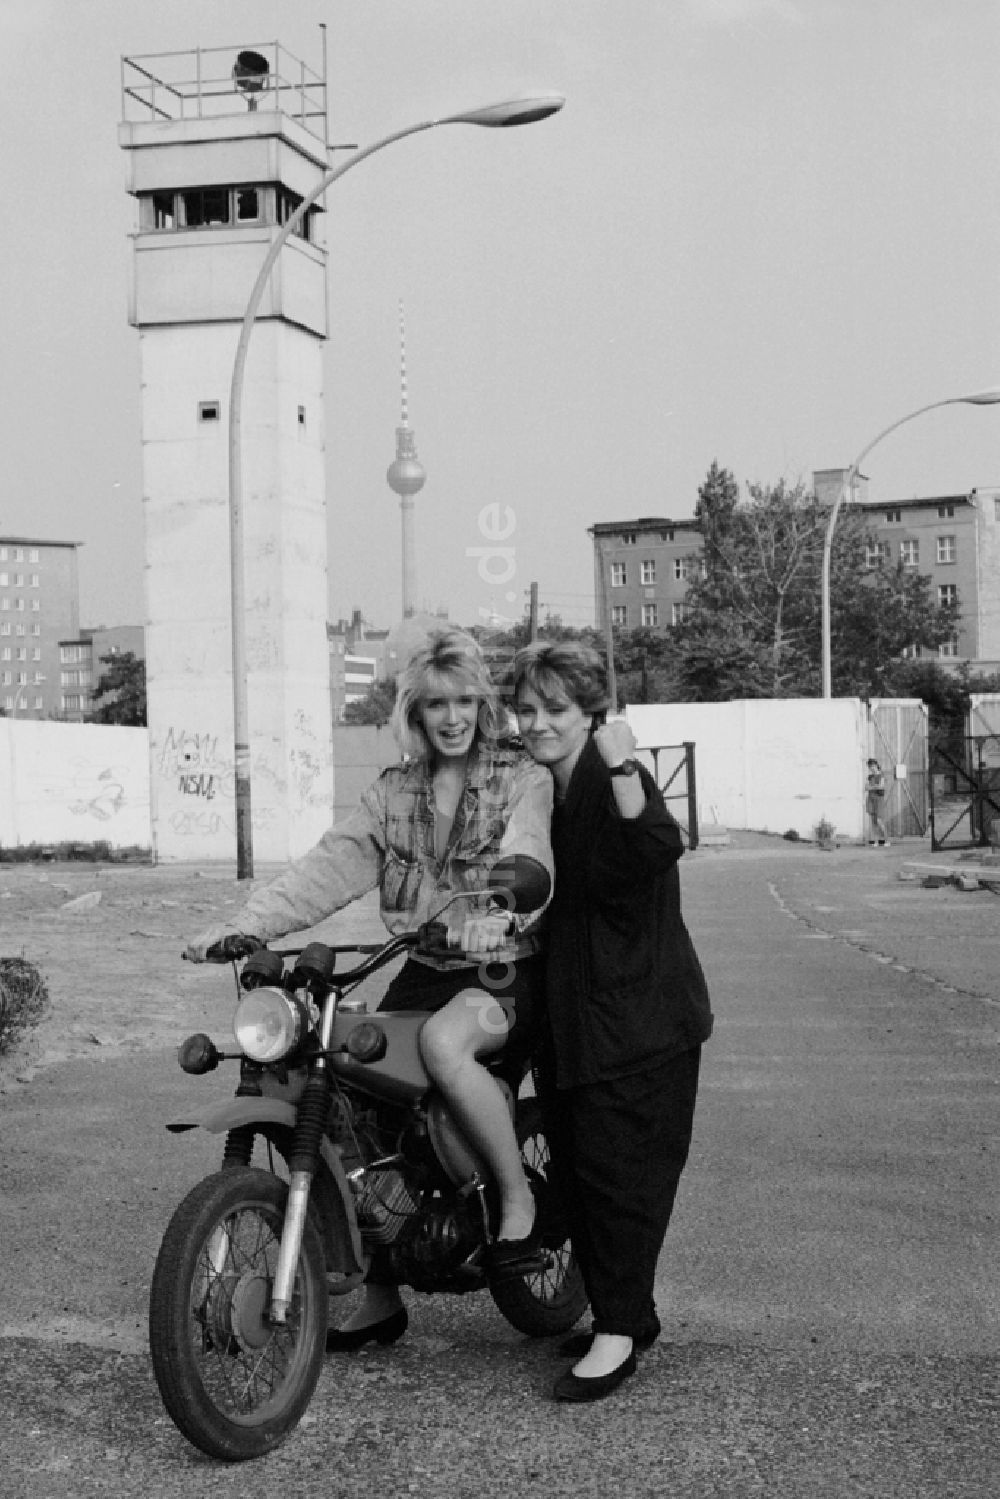 DDR-Fotoarchiv: Berlin - Moped vom Typ S50 mit jungen Frauen im ehemaligen Mauerstreifen an der Bernauer Straße in Berlin in der DDR